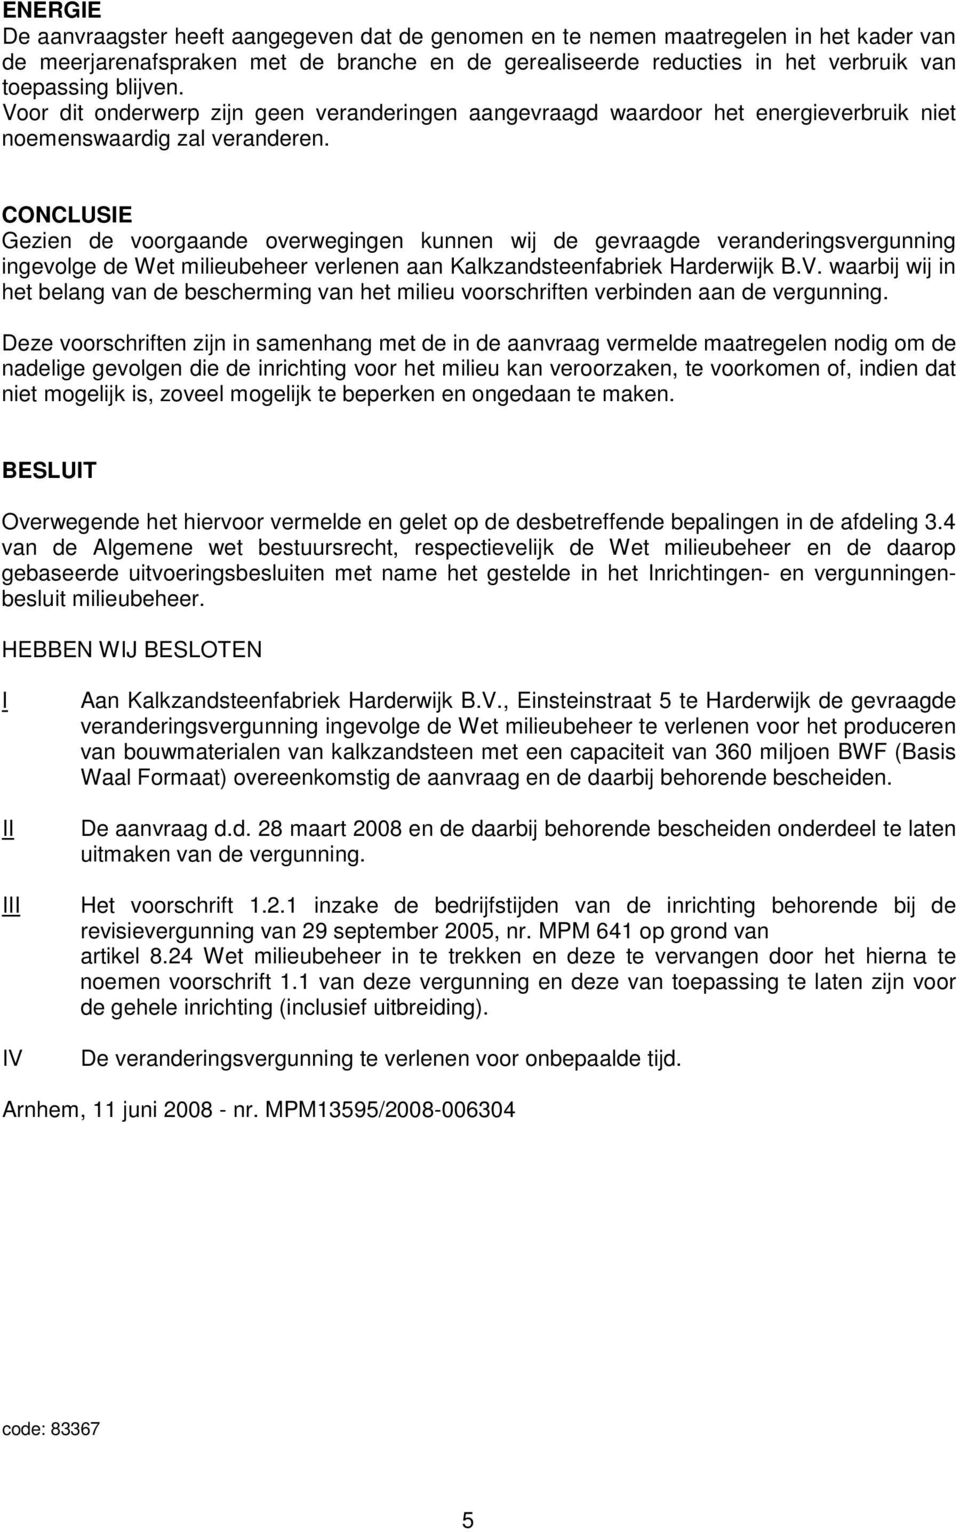 CONCLUSIE Gezien de voorgaande overwegingen kunnen wij de gevraagde veranderingsvergunning ingevolge de Wet milieubeheer verlenen aan Kalkzandsteenfabriek Harderwijk B.V.